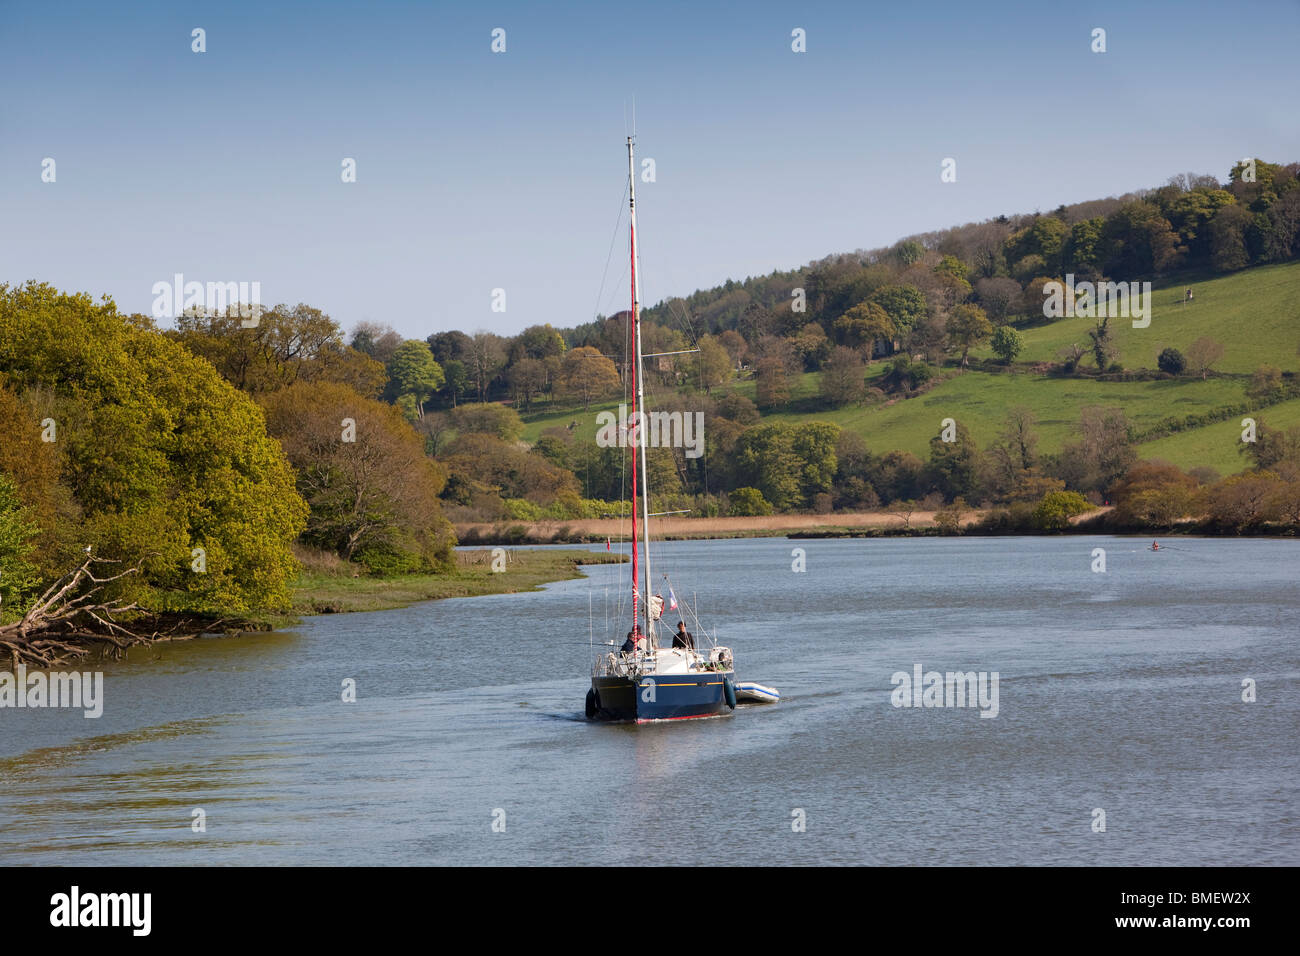 Royaume-uni, Angleterre, Devon, rivière Dart, cher bateau à voile au moteur près de Totnes Banque D'Images